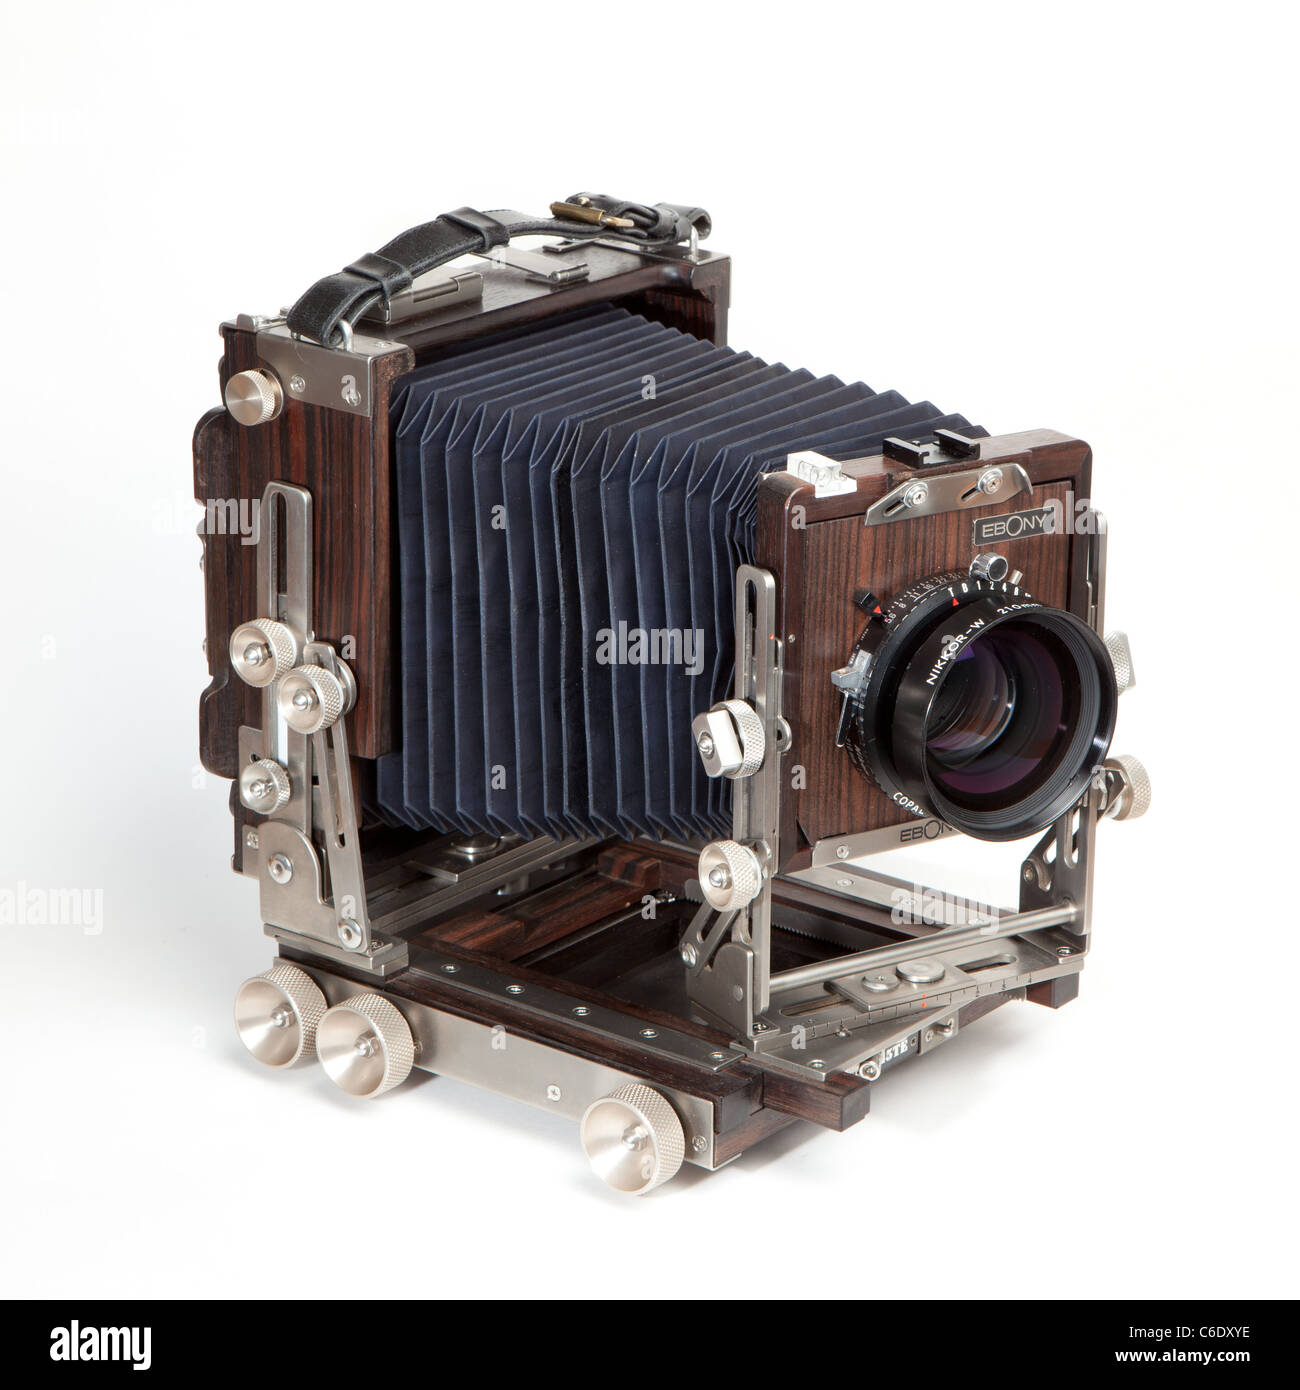 Visualizza fotocamera di grande formato di fotocamera, campo, fotocamera fotocamera lf, 4x5 fotocamera con movimenti su sfondo bianco Foto Stock